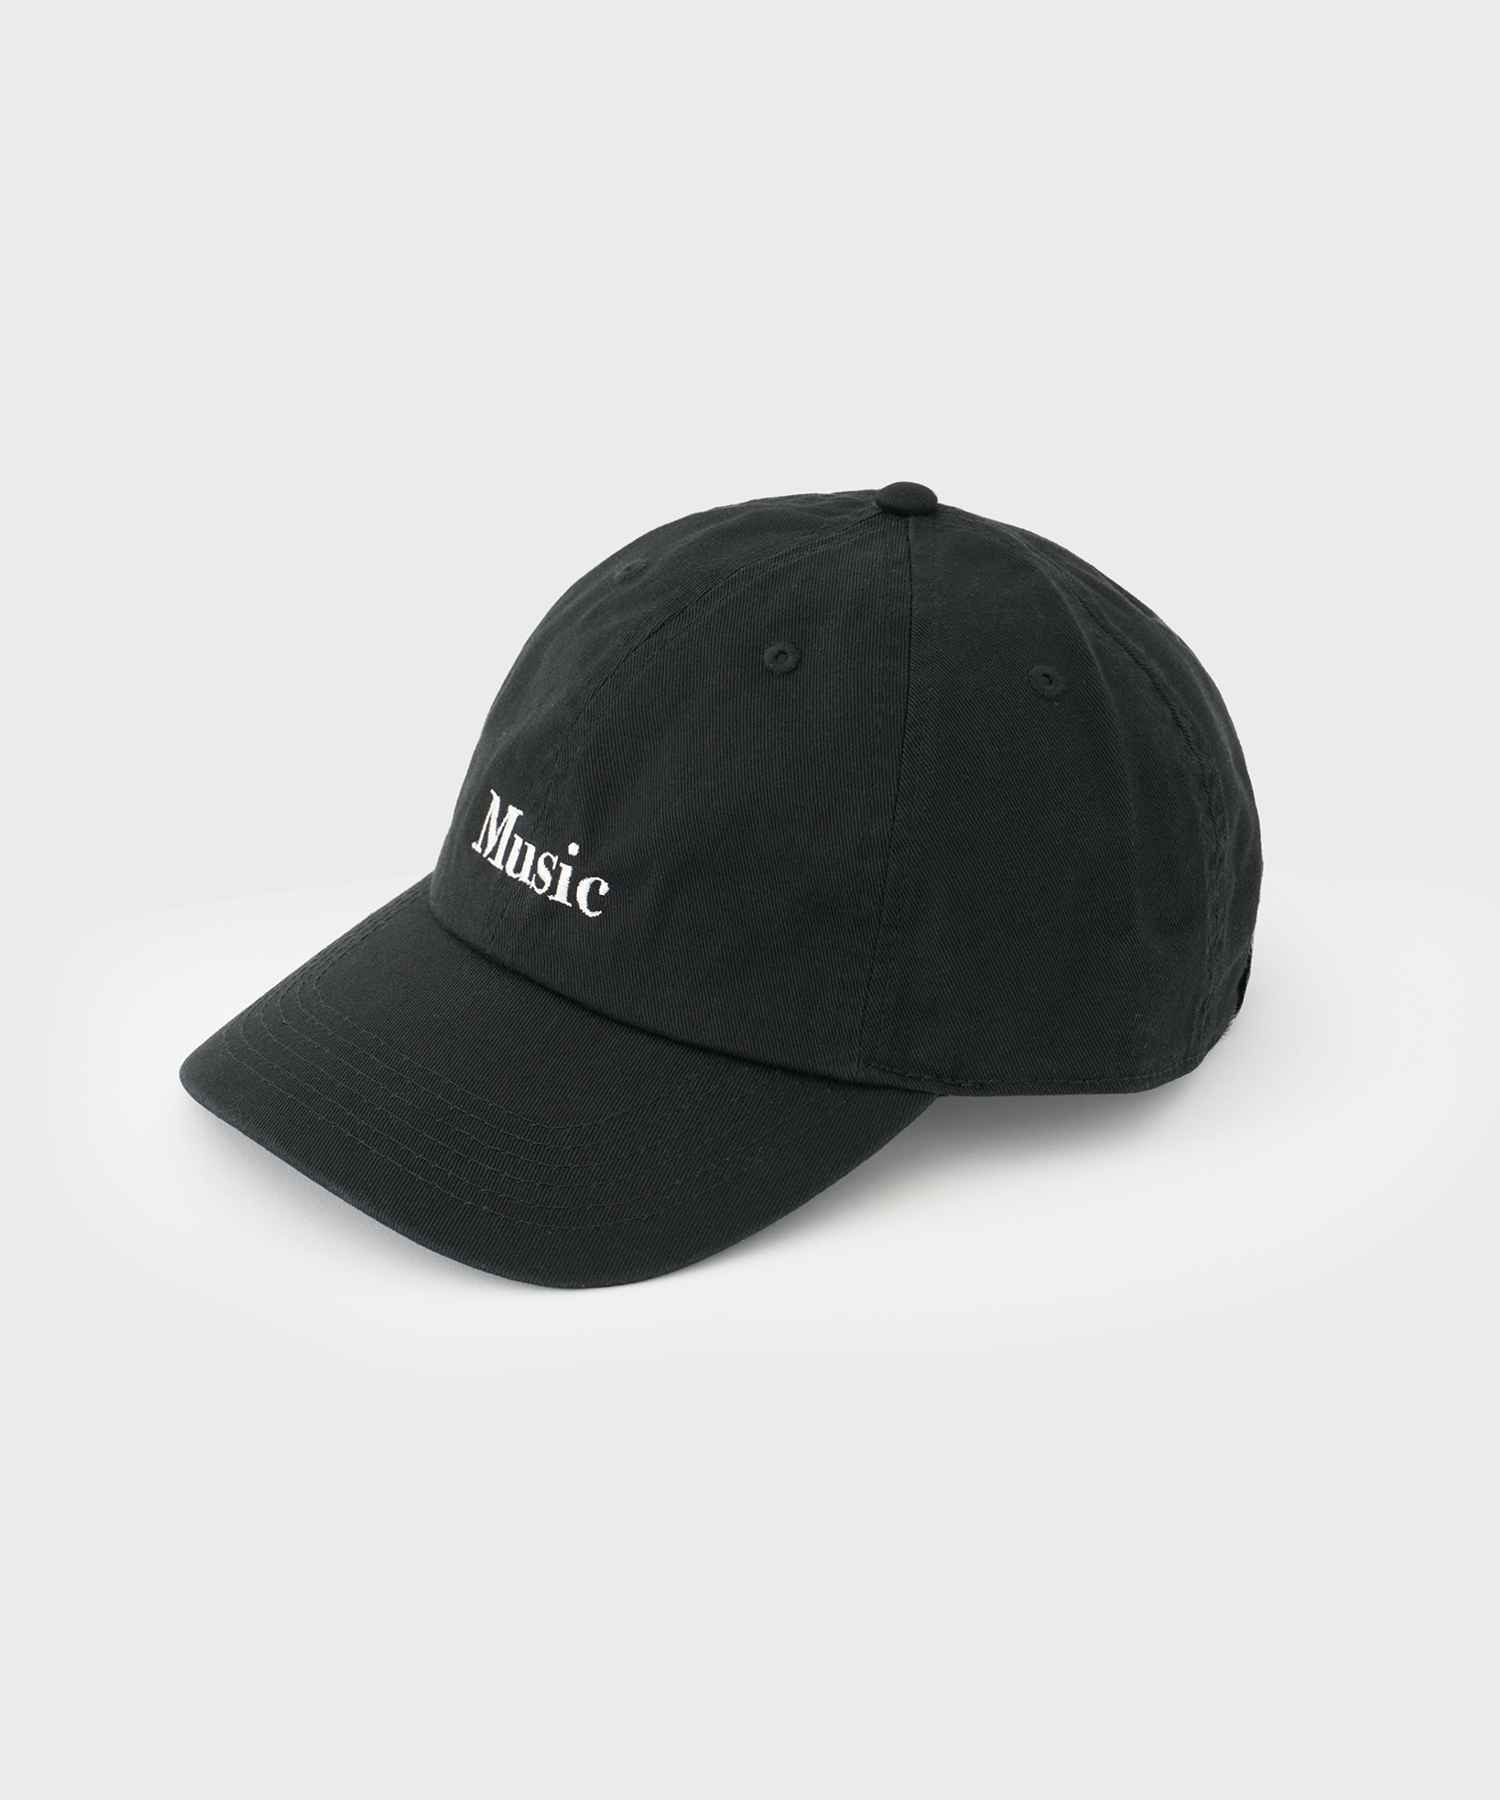 Music Cap (Black)